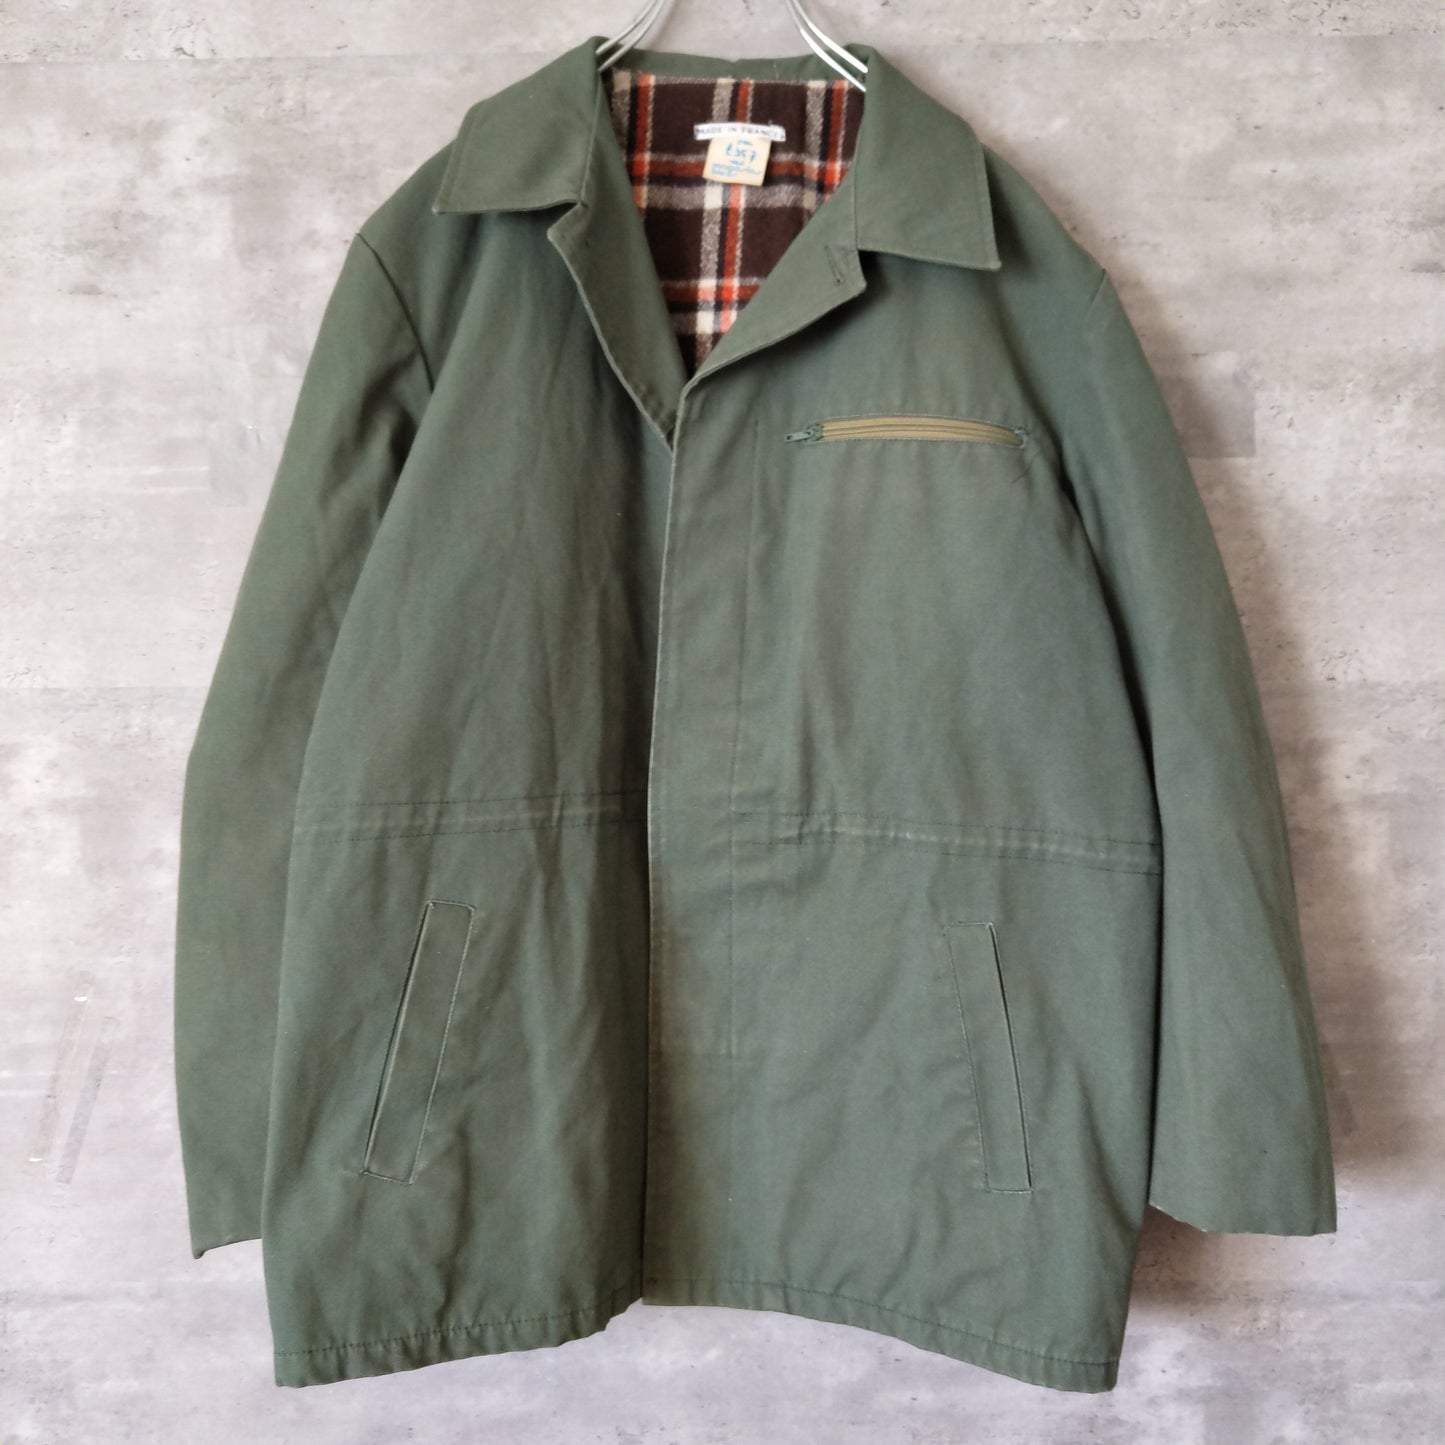 [magasins bleus] vintage jacket, made in France